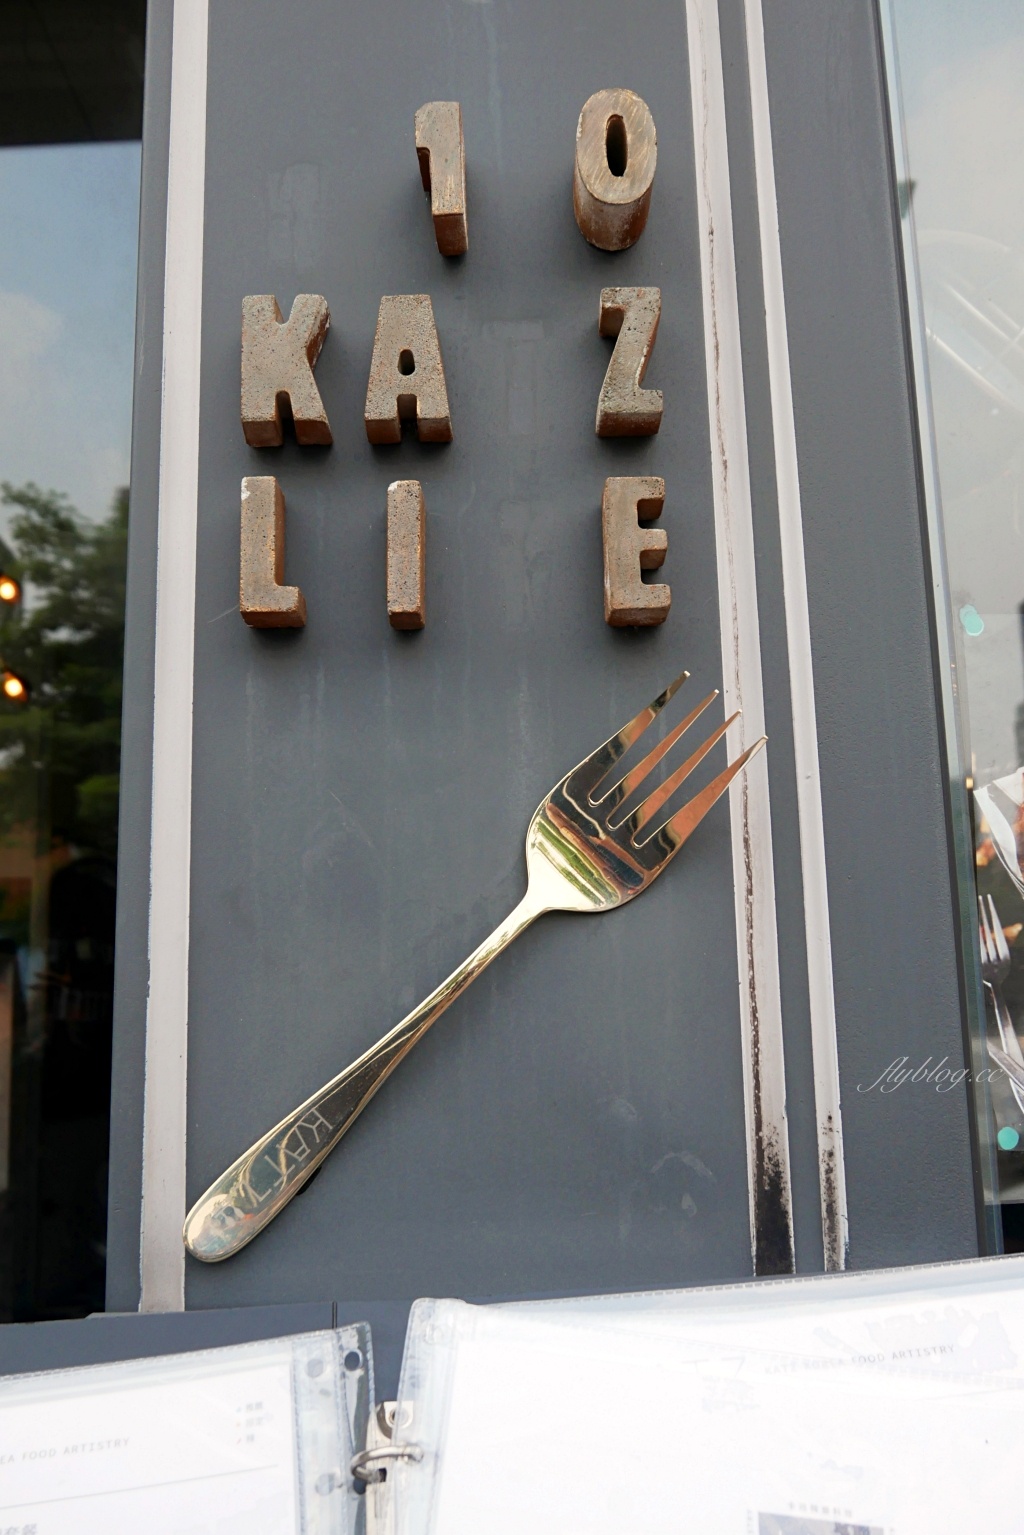 KATZ 卡司｜美術館綠園道韓式餐廳，主打網美風創意韓式料理 @飛天璇的口袋